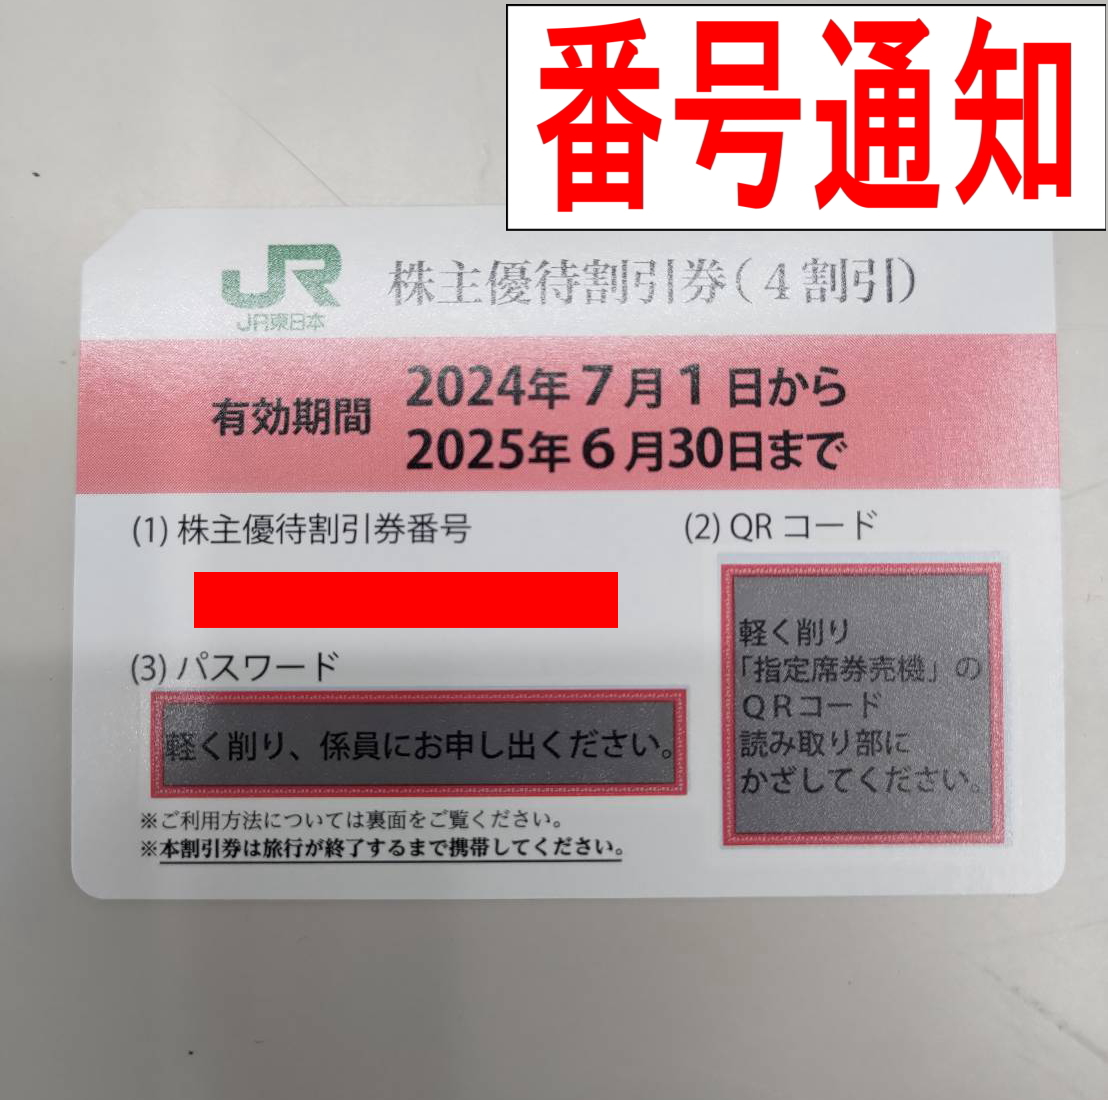 チケットカプリ オンラインストア / 【JR東日本】株主優待40%割引券 2025年6月末期限【番号通知】